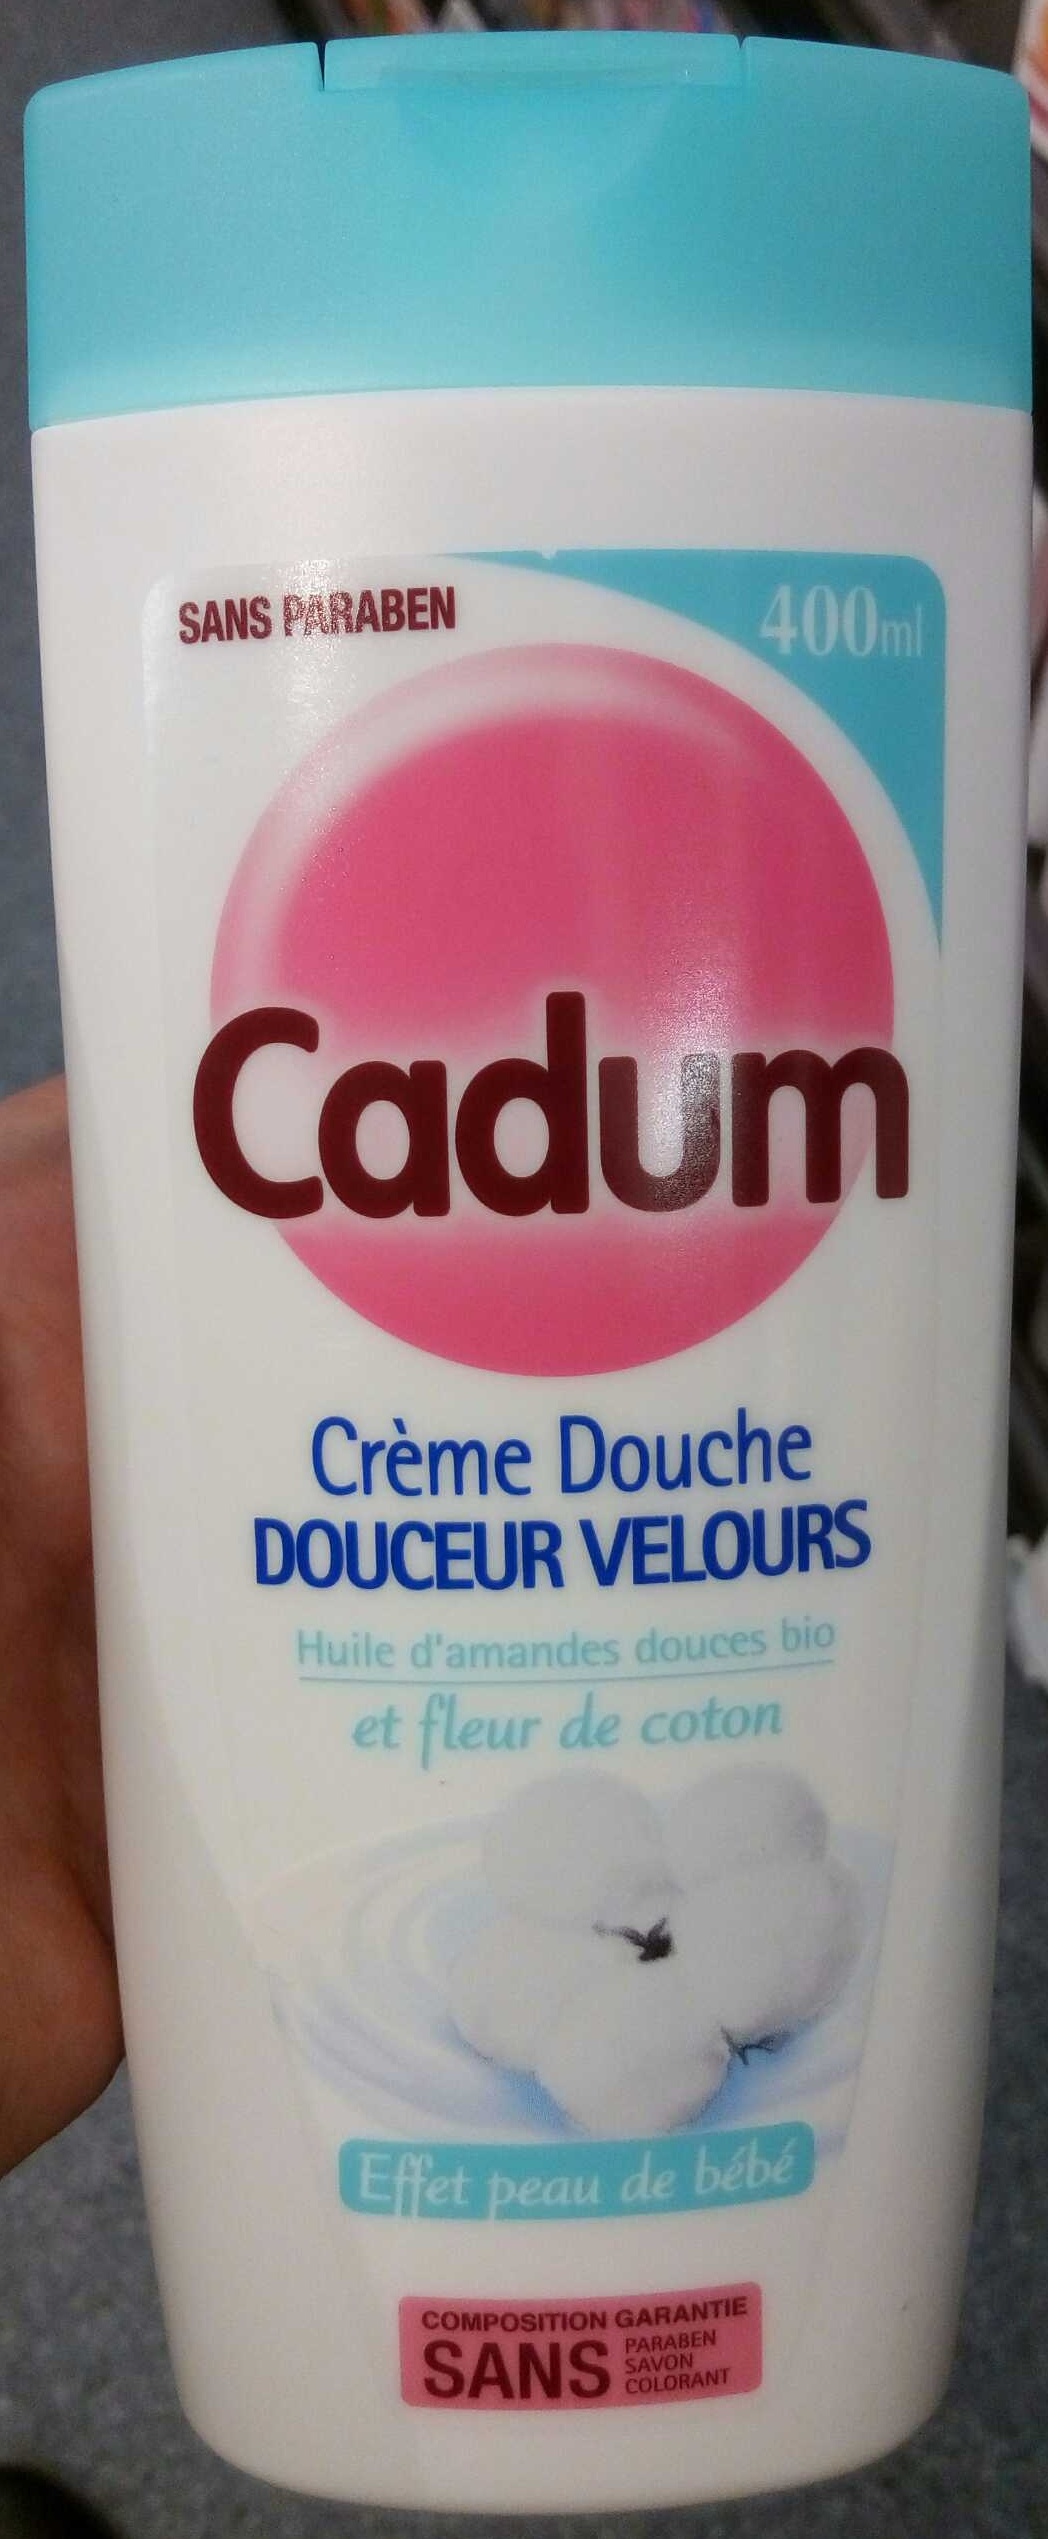 Crème Douche Douceur Velours - 製品 - fr